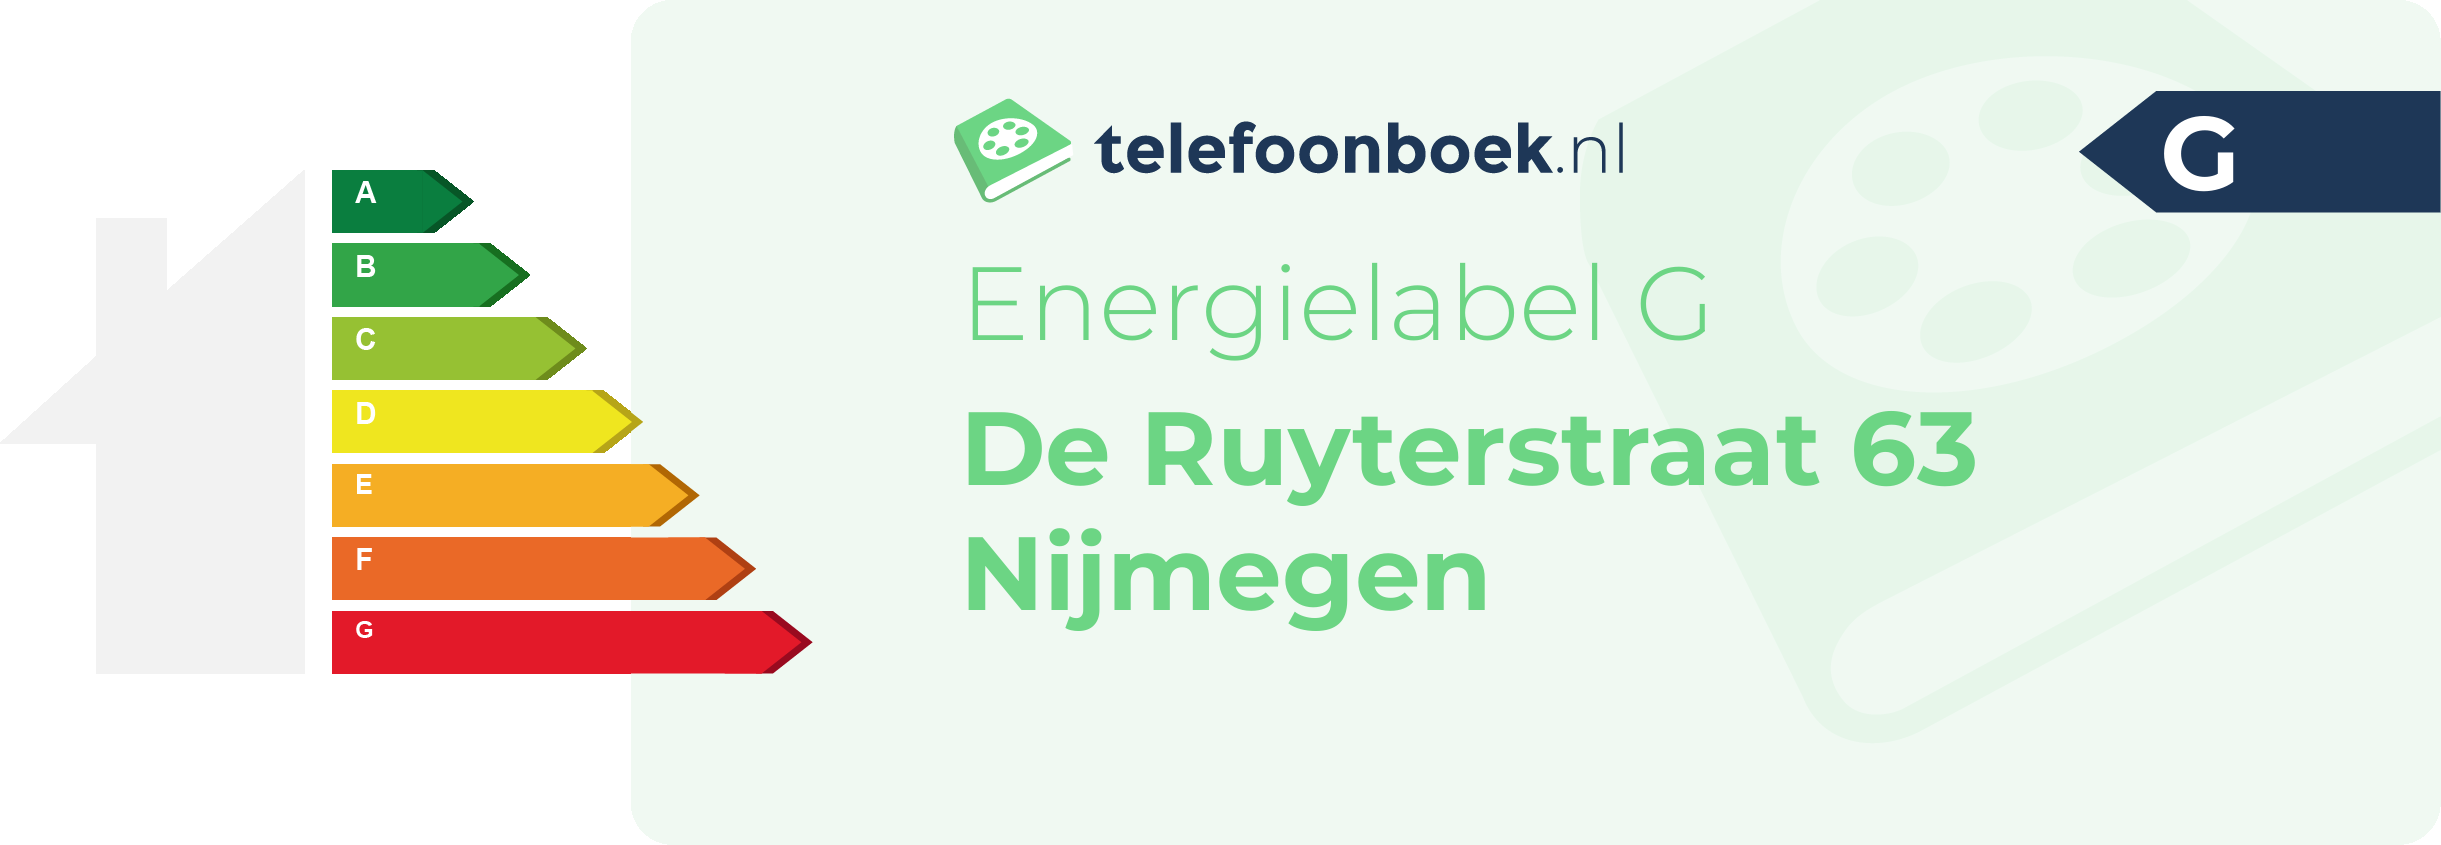 Energielabel De Ruyterstraat 63 Nijmegen